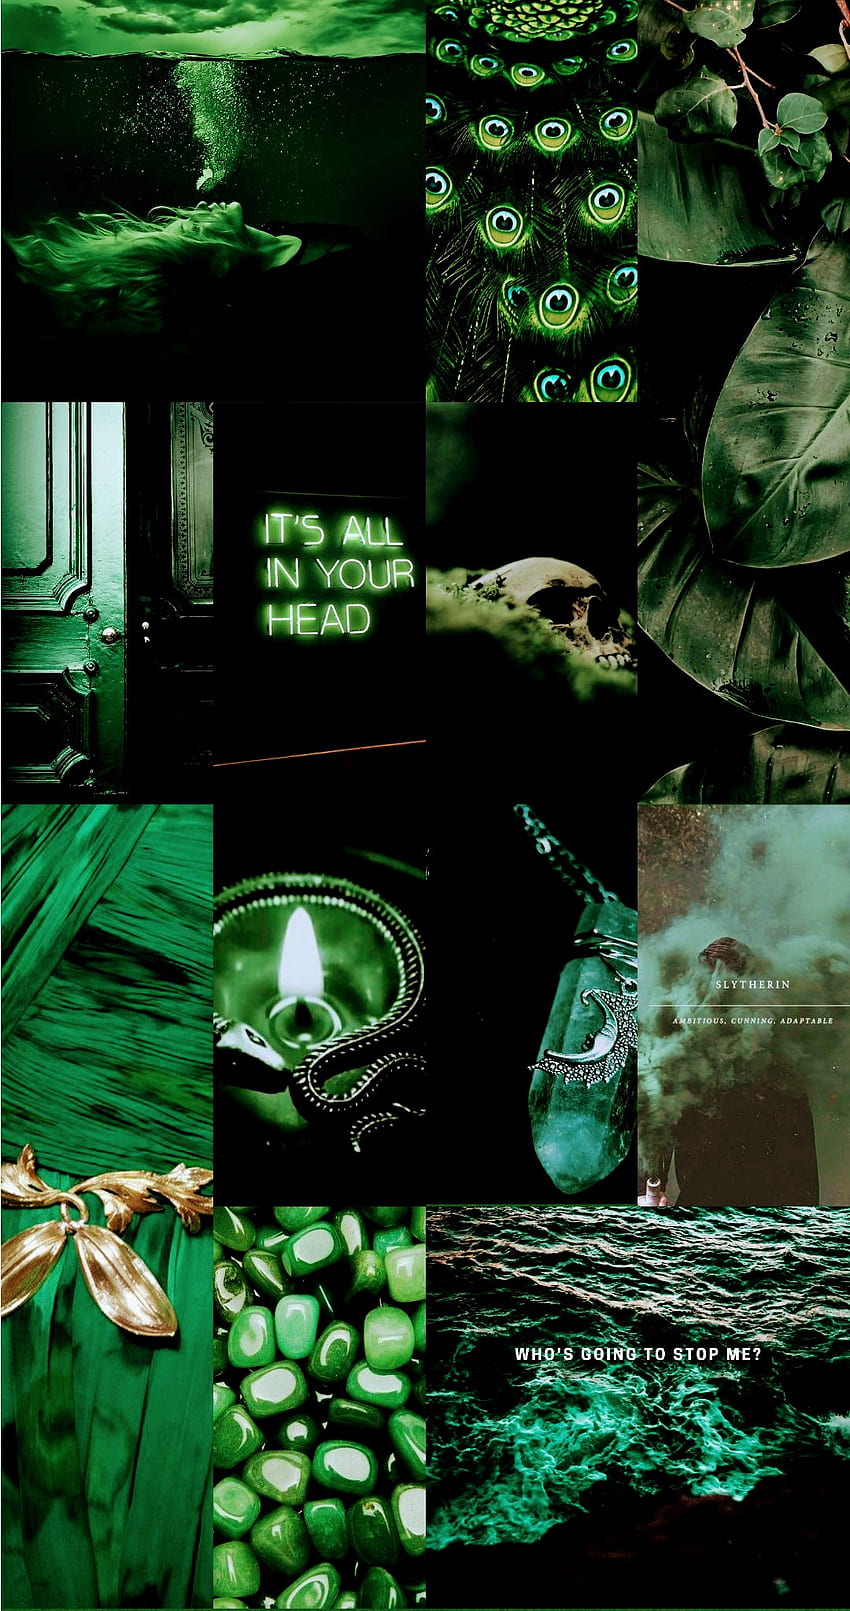 Hiss hiss mf, draco malfoy, green, dark, harry potter, slytherin ...